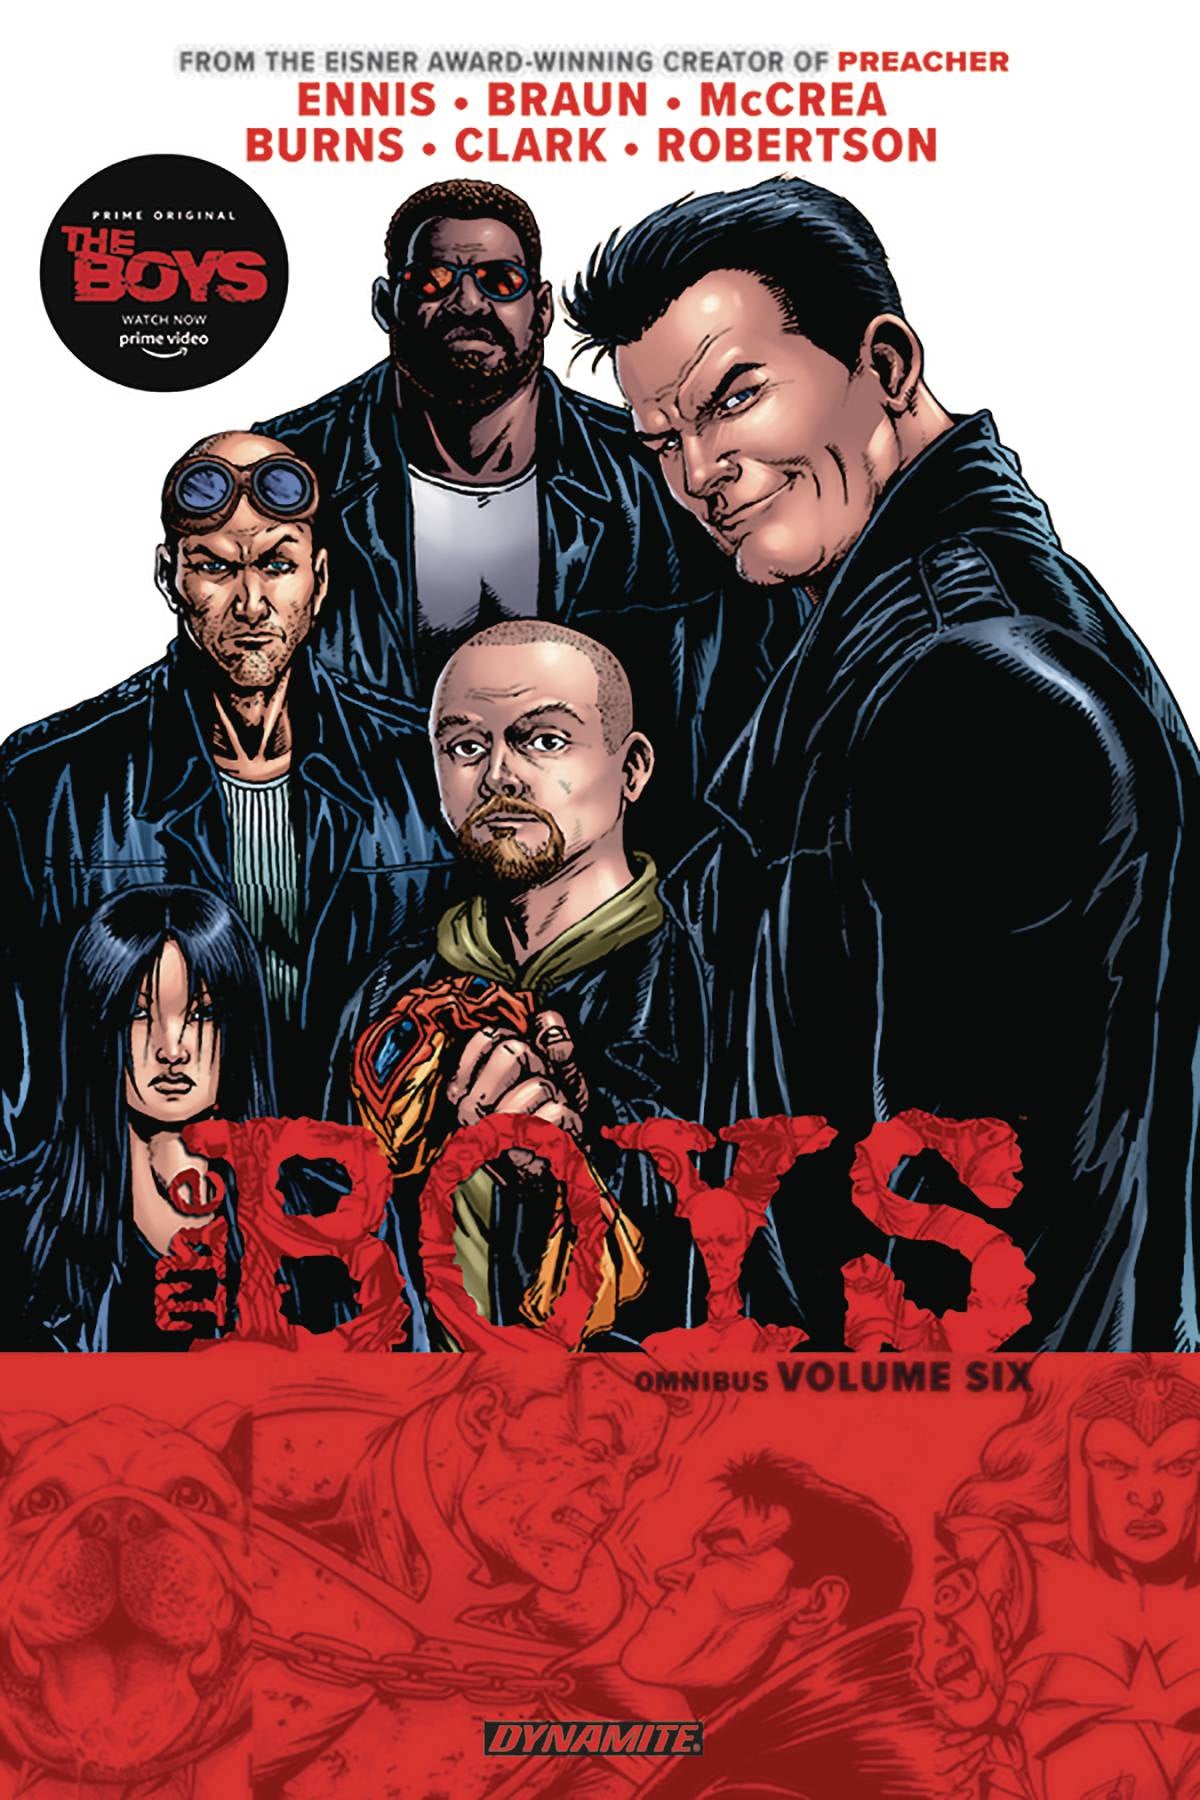 THE BOYS OMNIBUS VOLUME 06